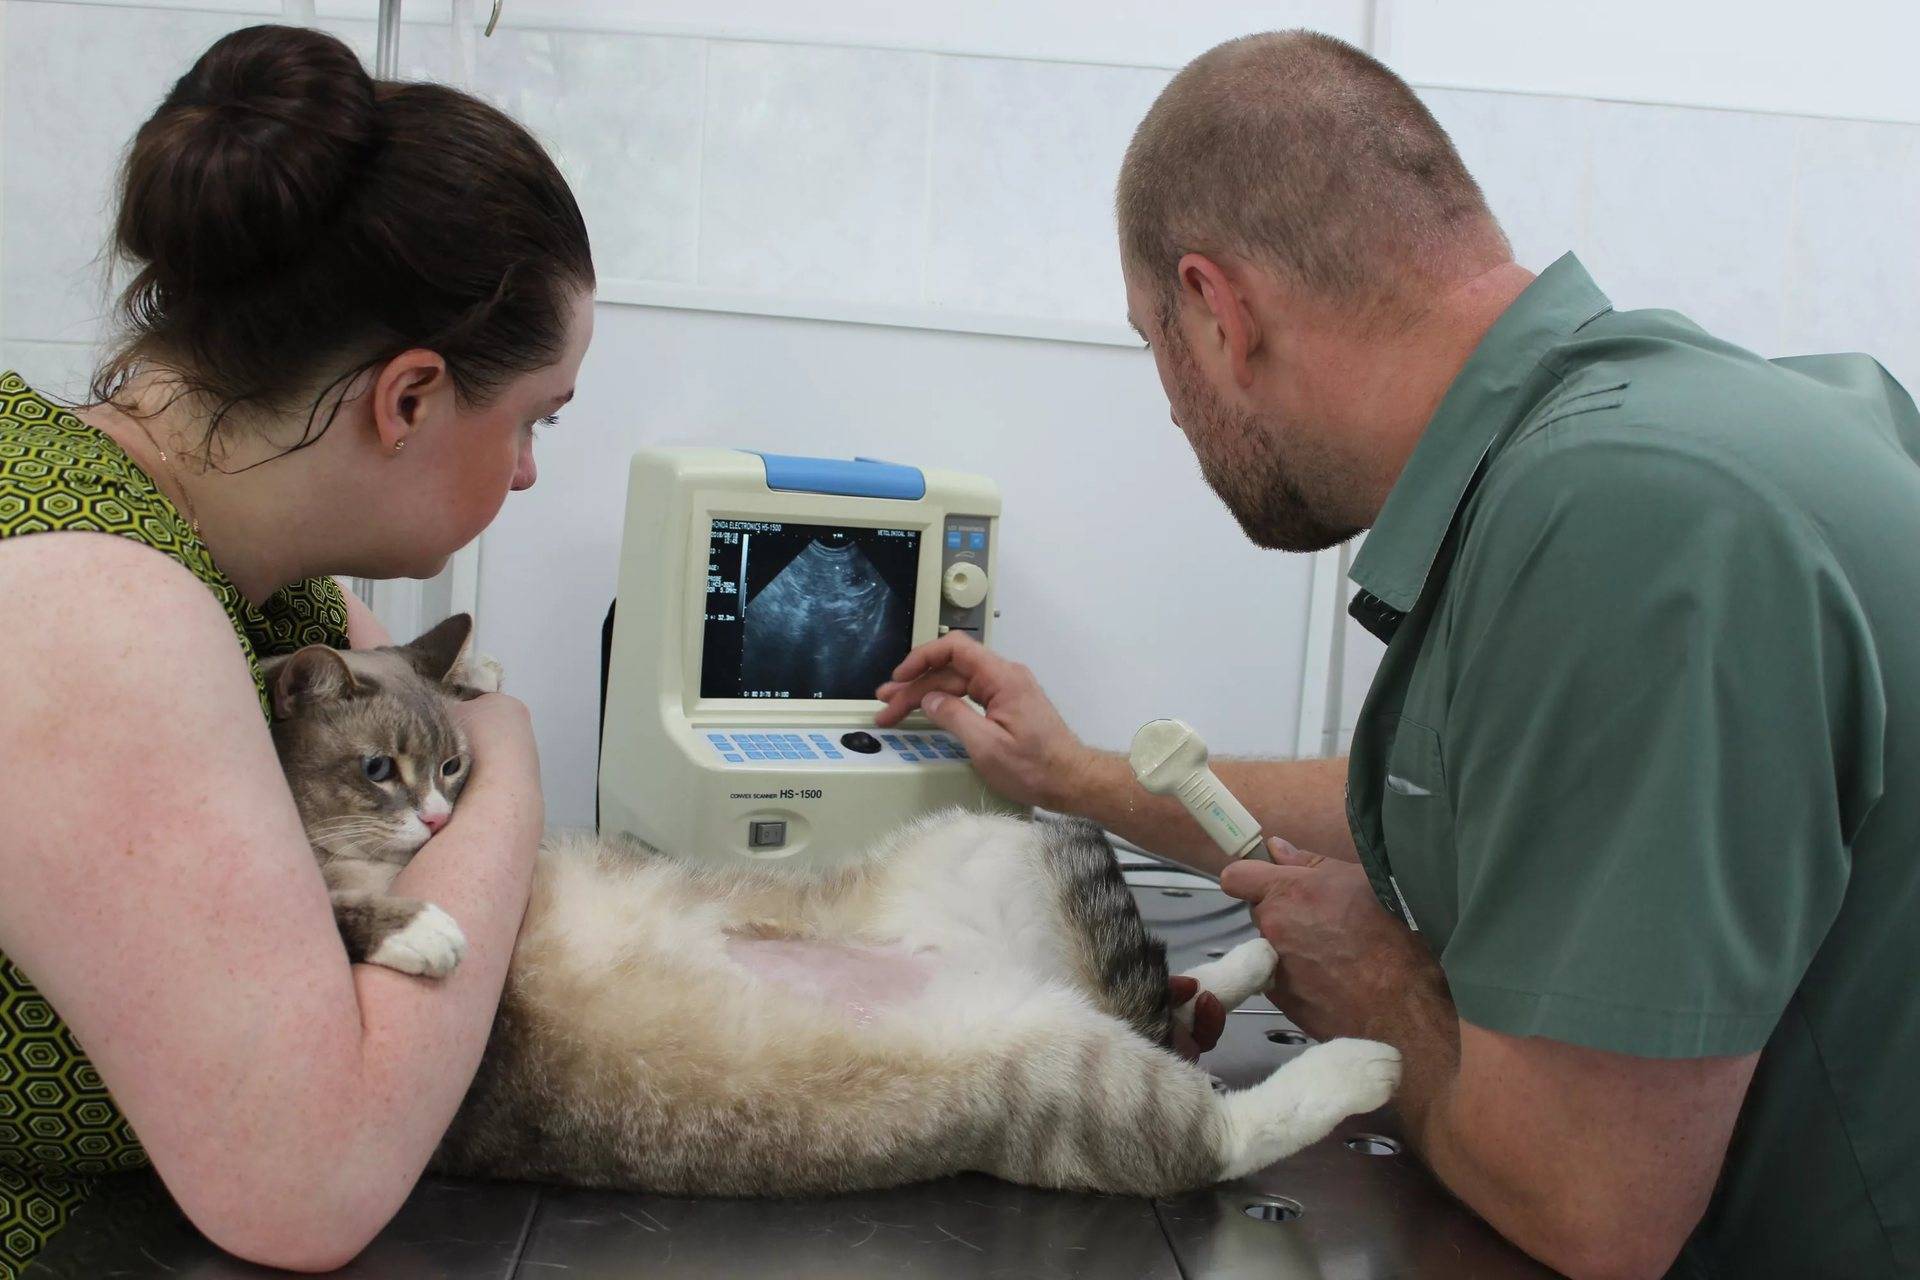 Уретропластика котов как оперативное лечение при осложнениях мочекаменной болезни